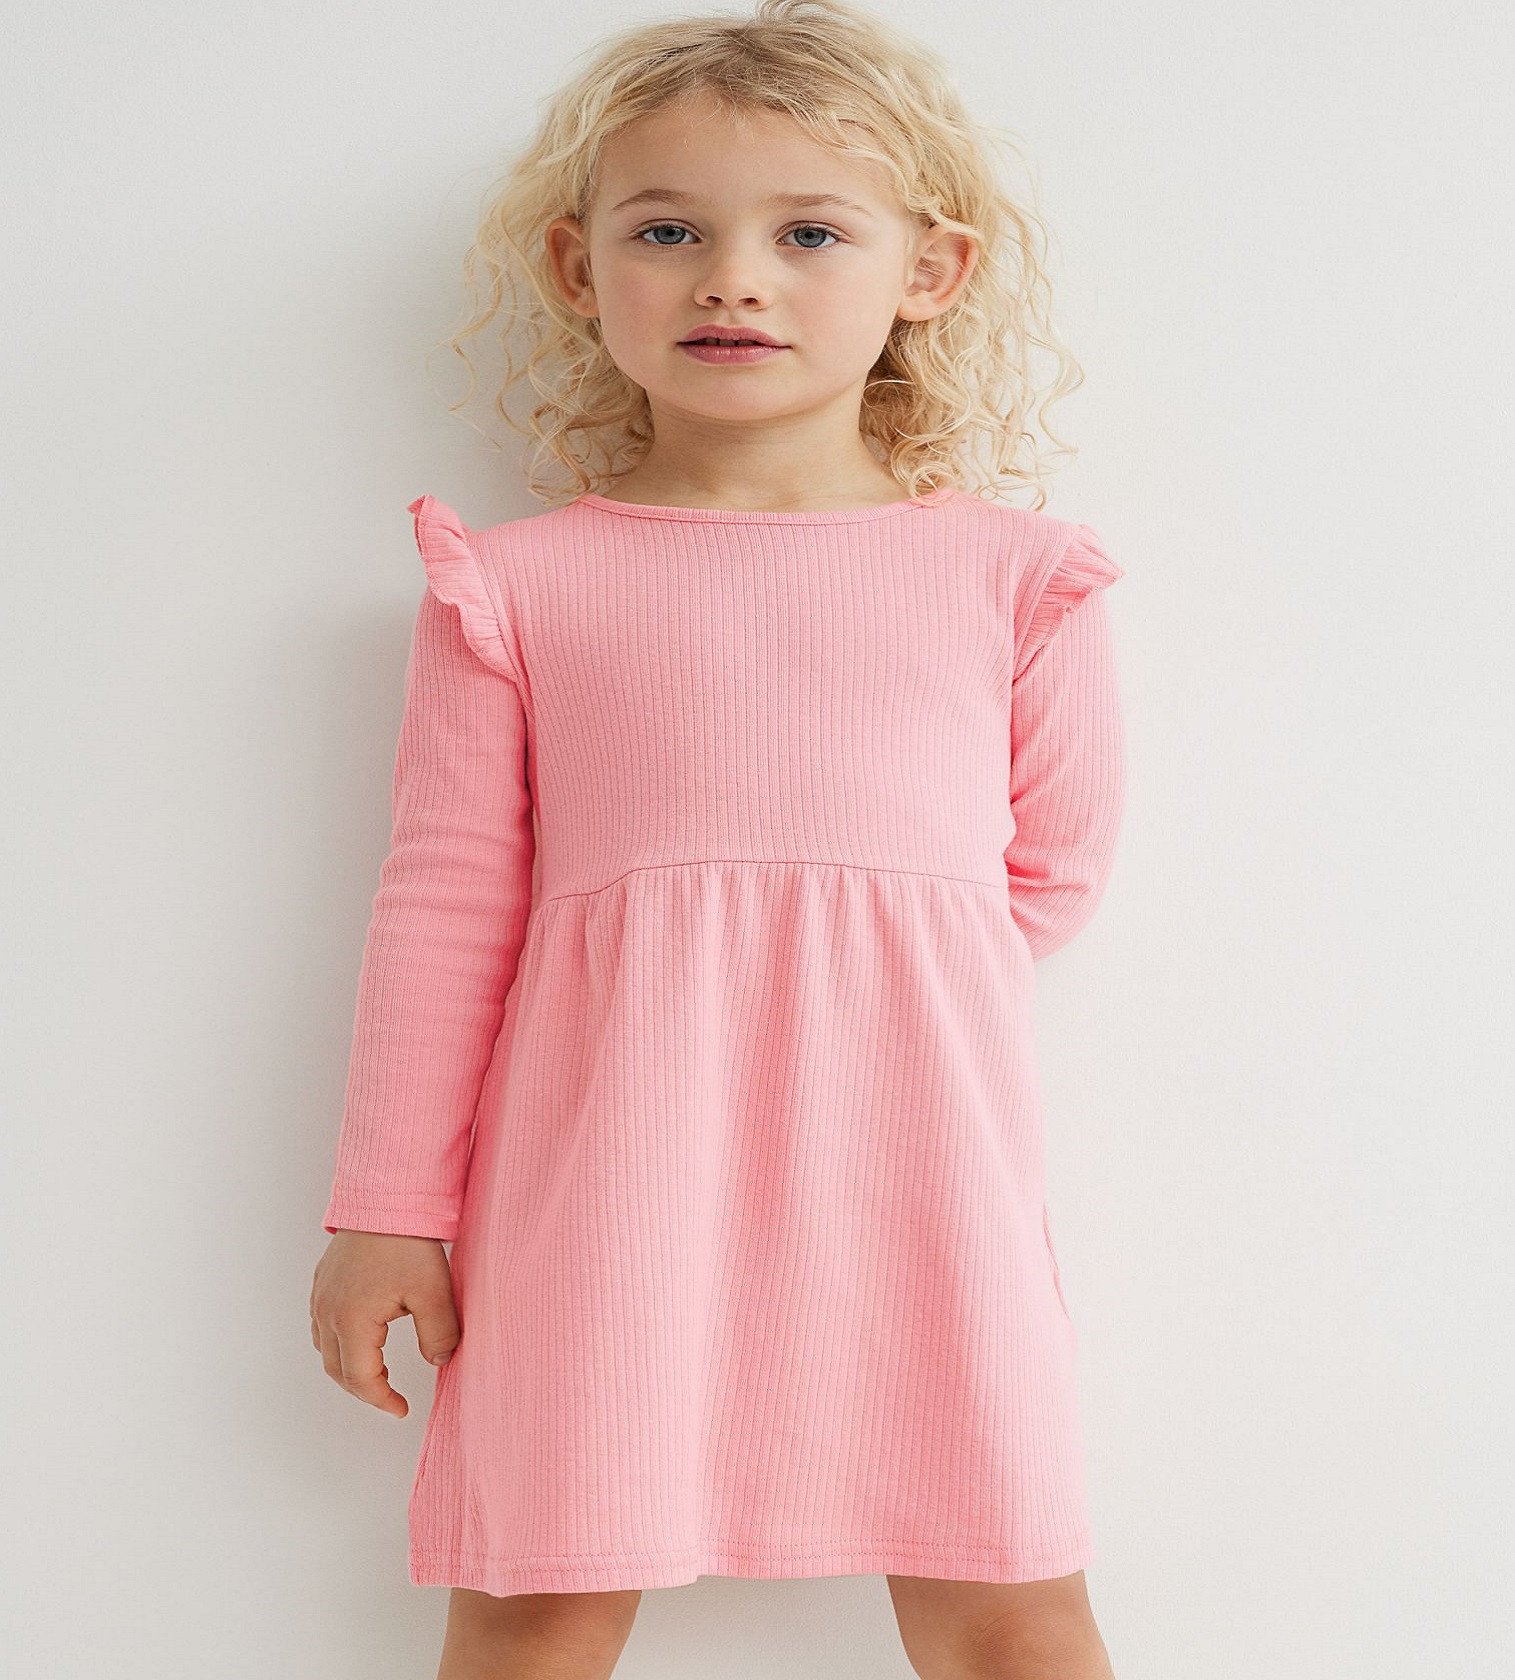 Купить Трикотажное платье в рубчик H&M Light pink - фото 1